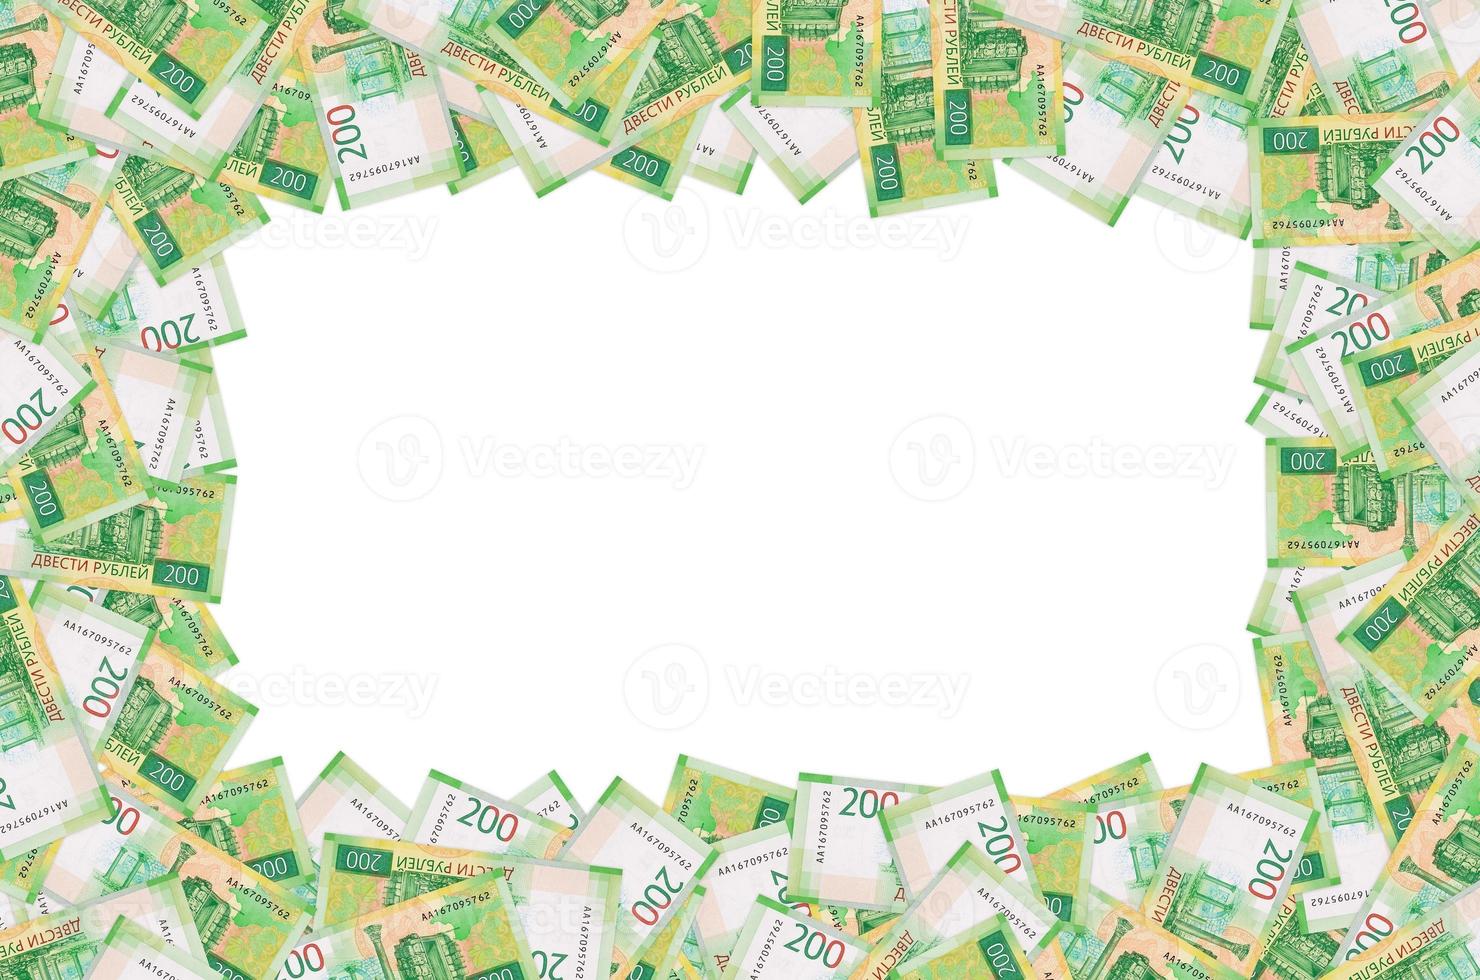 vista de chersonesos taurico na nova nota de 200 rublos verde russo 2017 foto